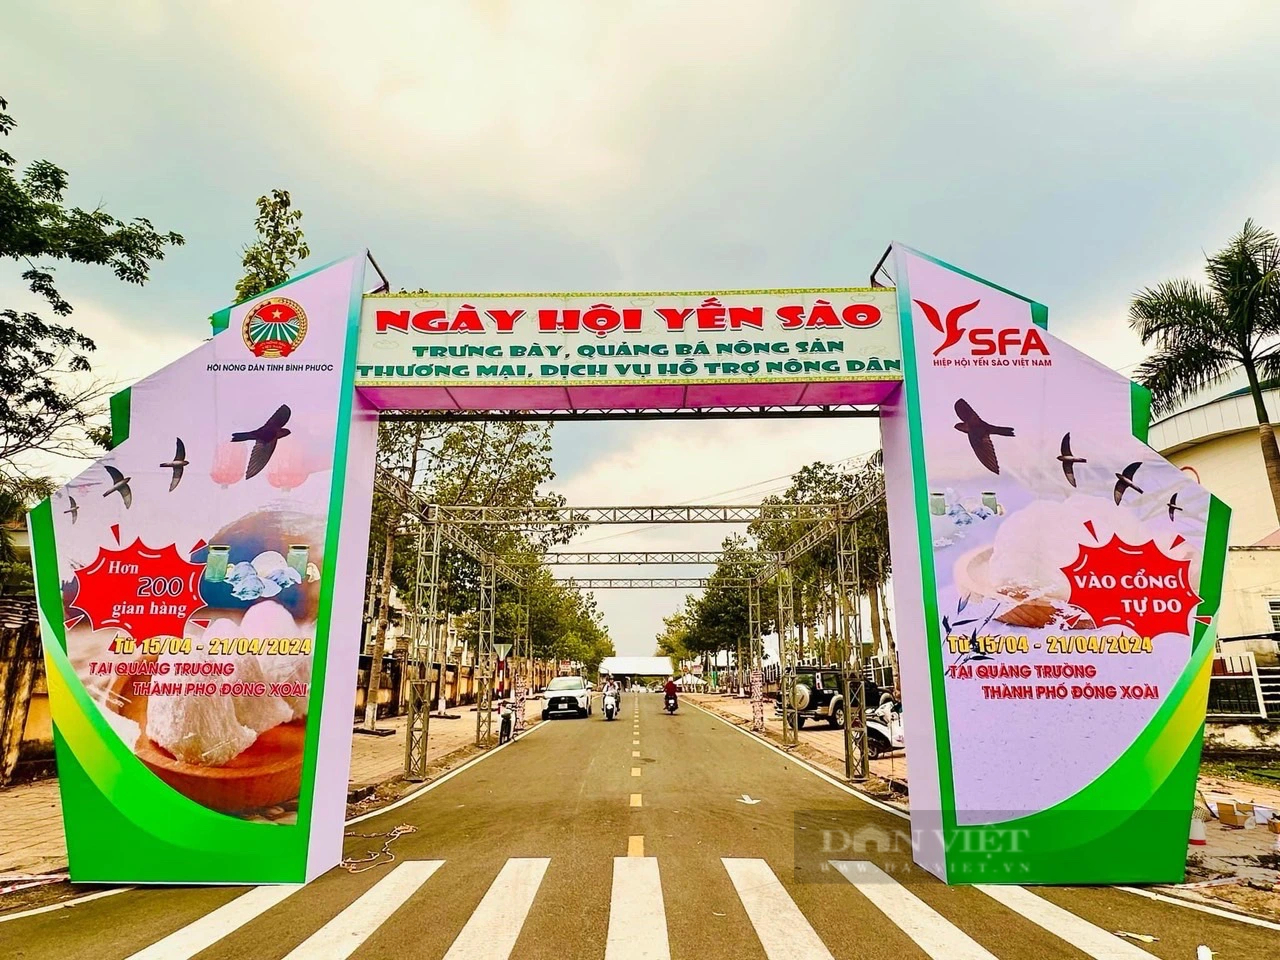 Sắp diễn ra ngày hội của những nông dân nuôi loài chim tiền tỷ ở Bình Phước- Ảnh 1.